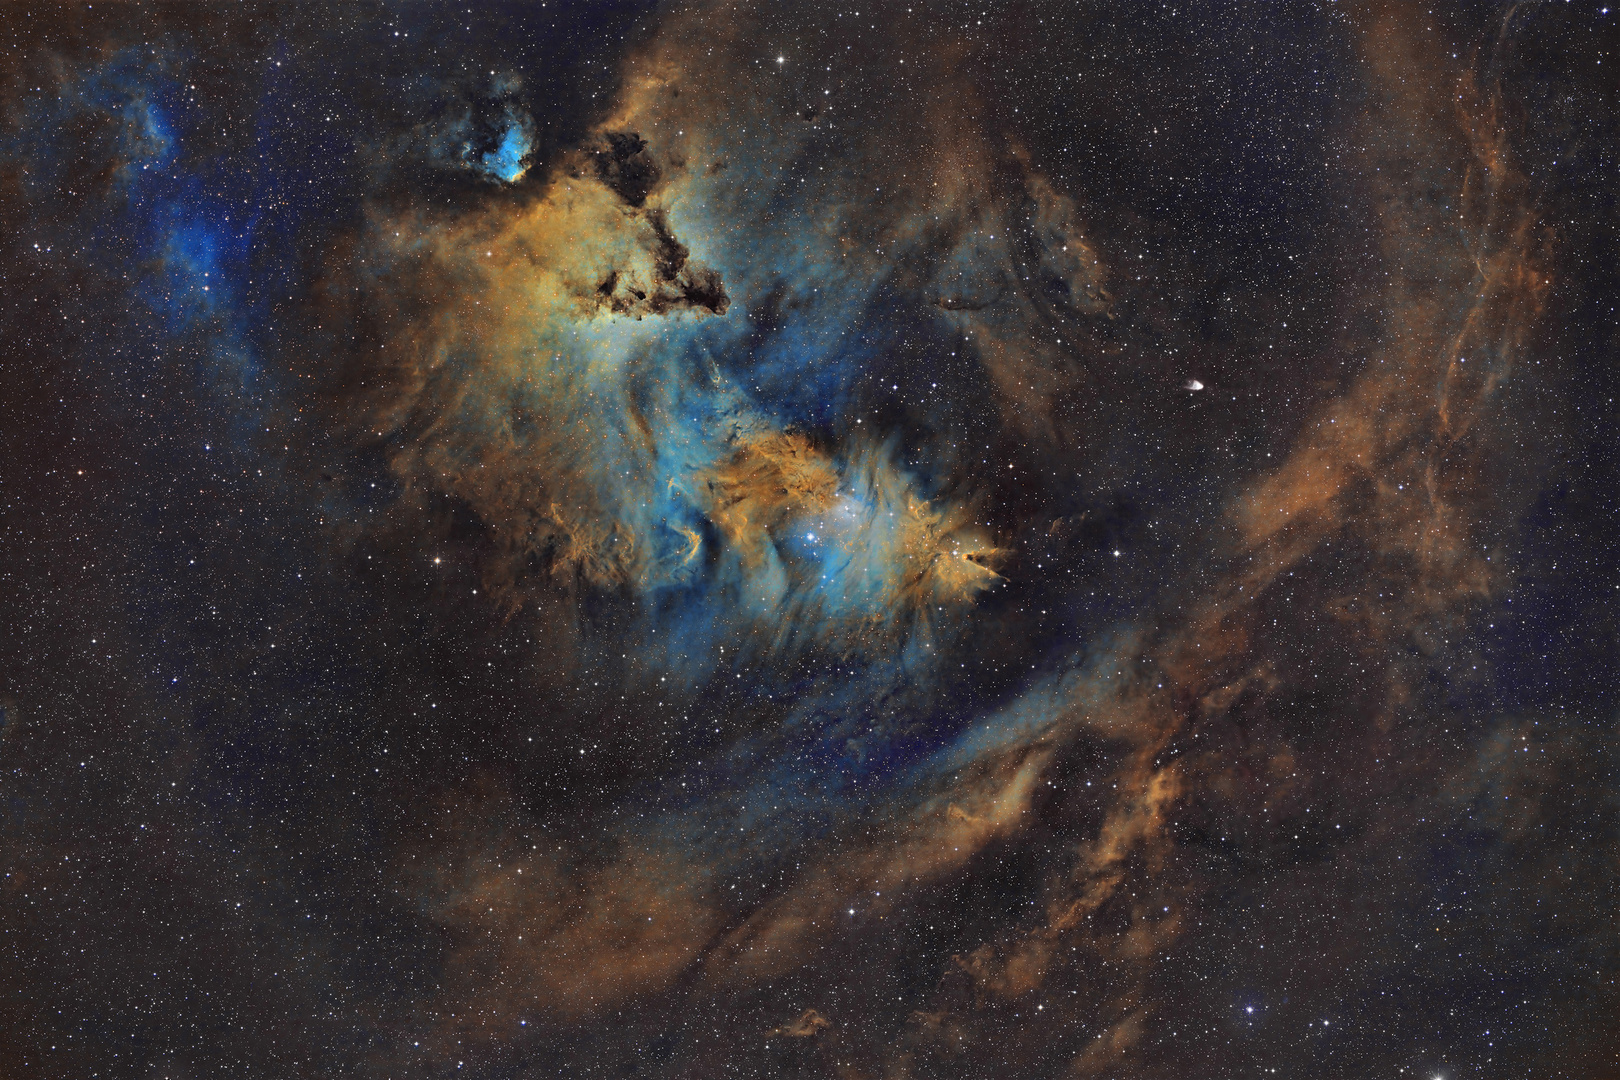 NGC2264_Der "Weihnachsbaum" Cluster